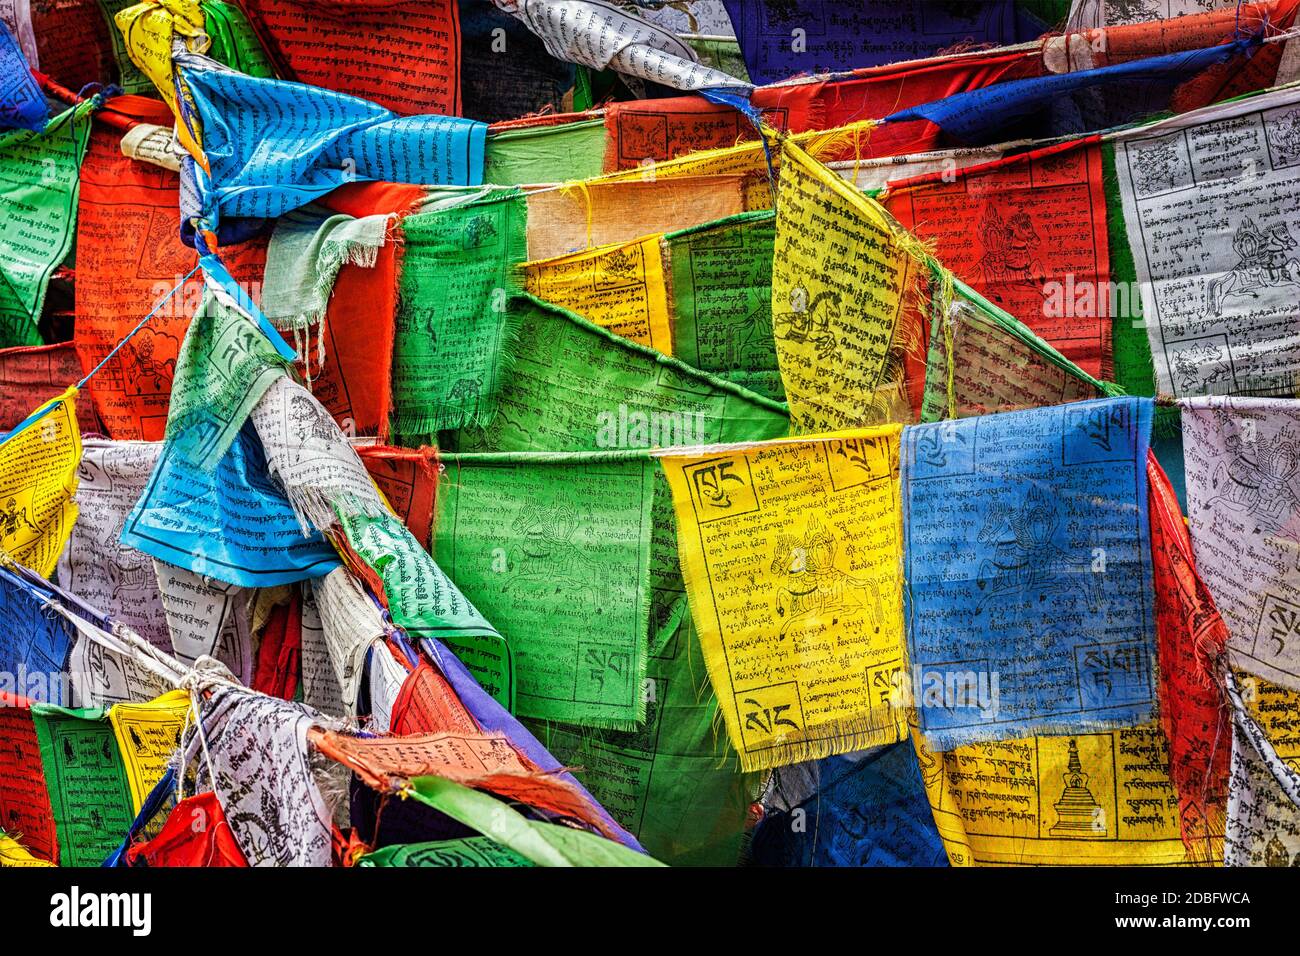 Bandiere di preghiera del buddismo tibetano (lungta) con mantra di preghiera Om mani padme hum in lingua tibetana. Leh, Ladakh, Jammu e Kashmir, India Foto Stock